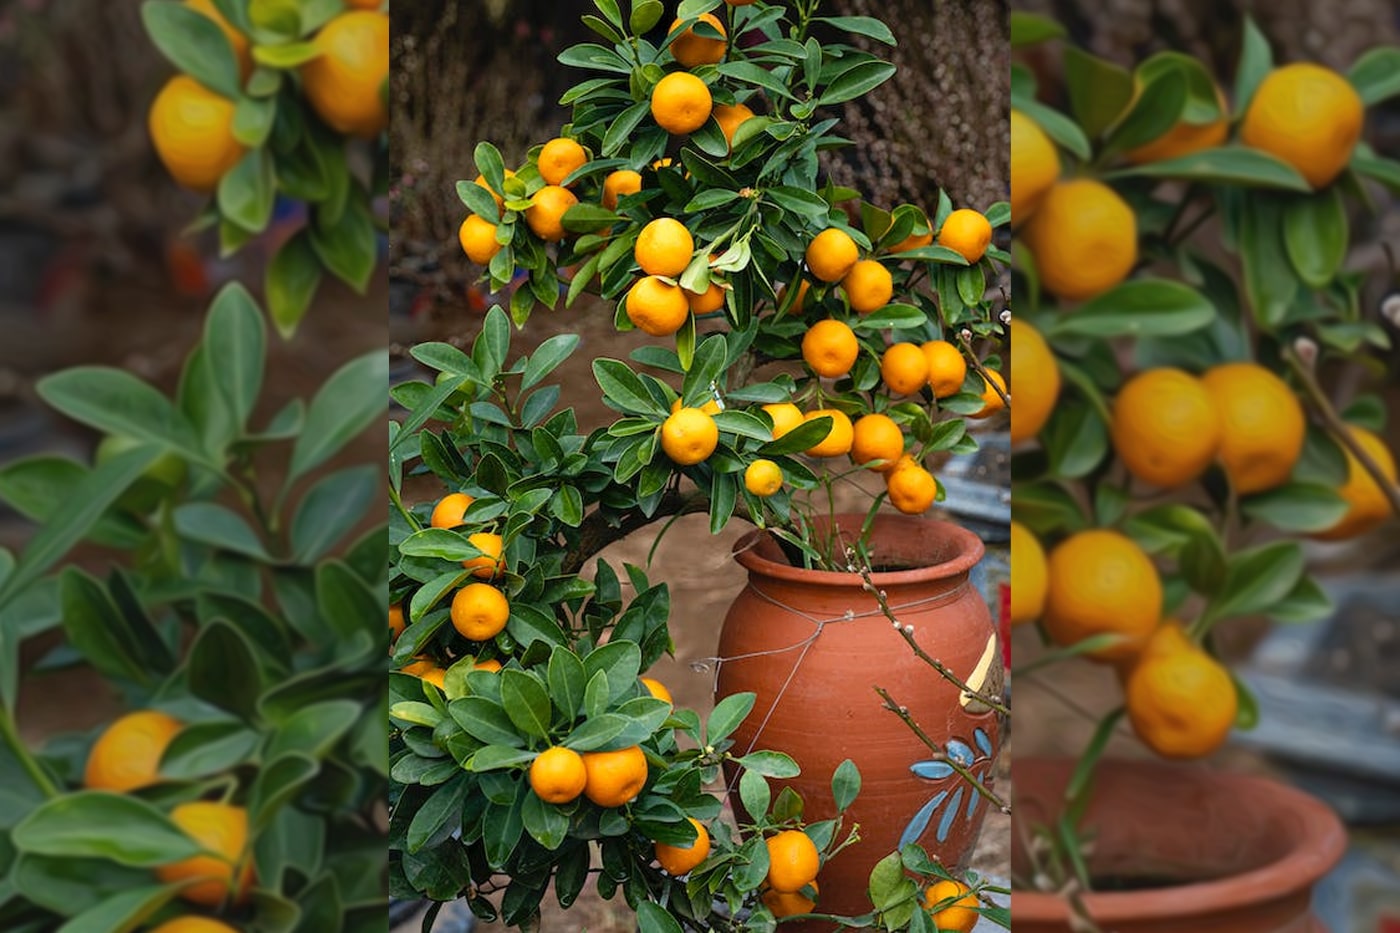 orange tree in pot